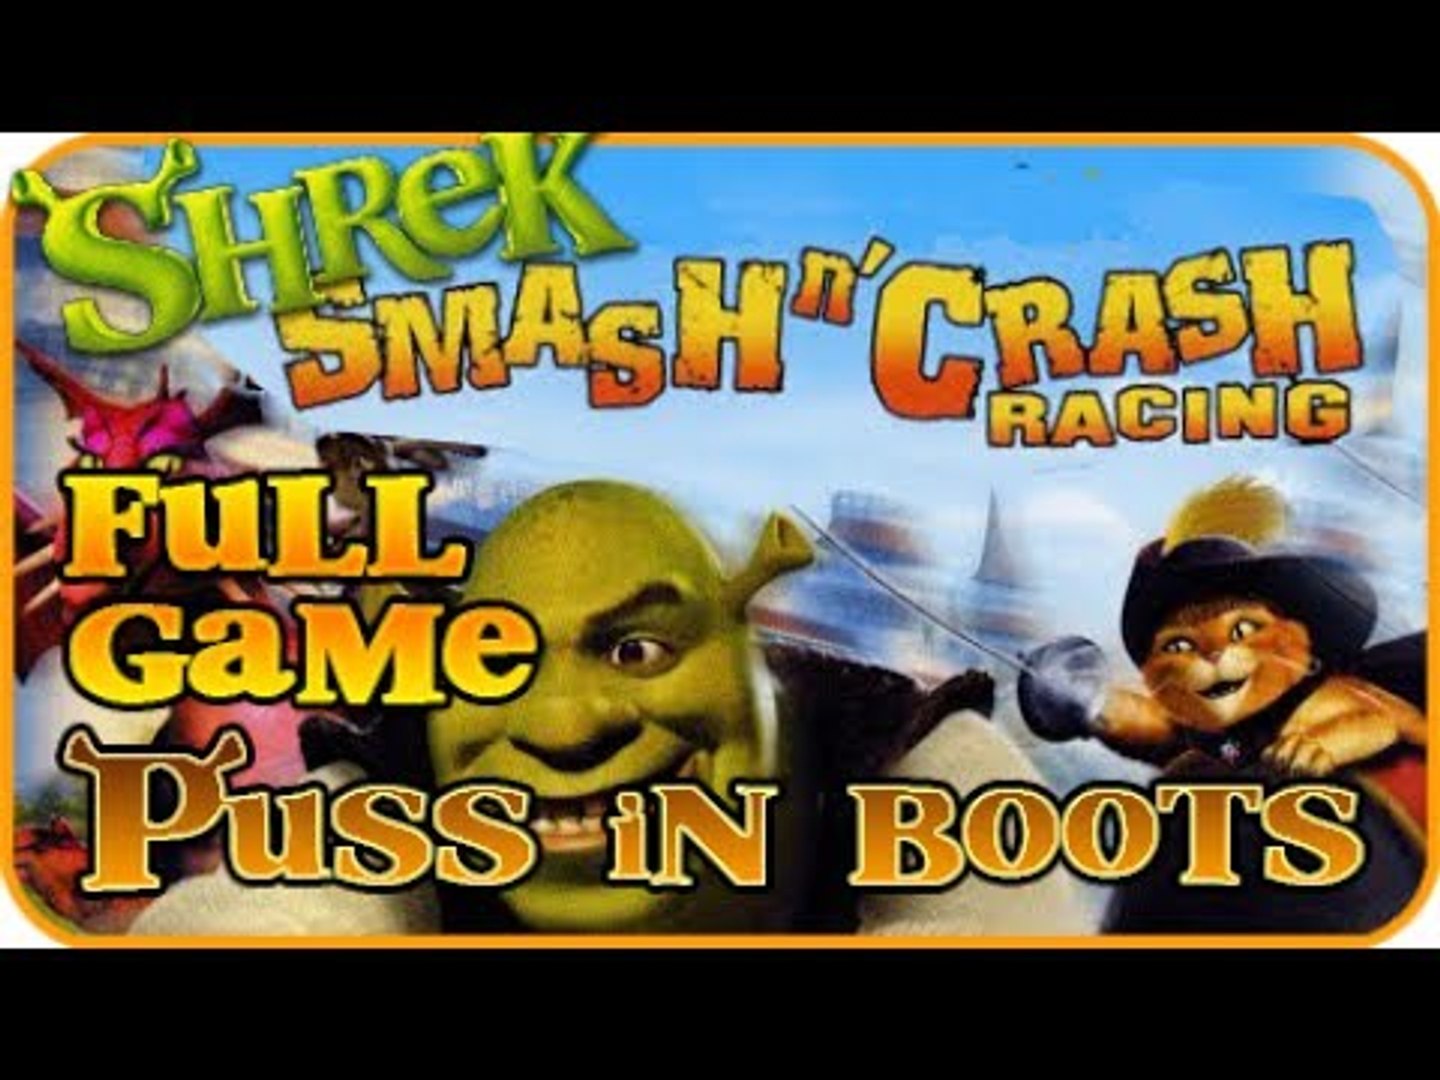 Shrek Smash N Crash - Gamecube 